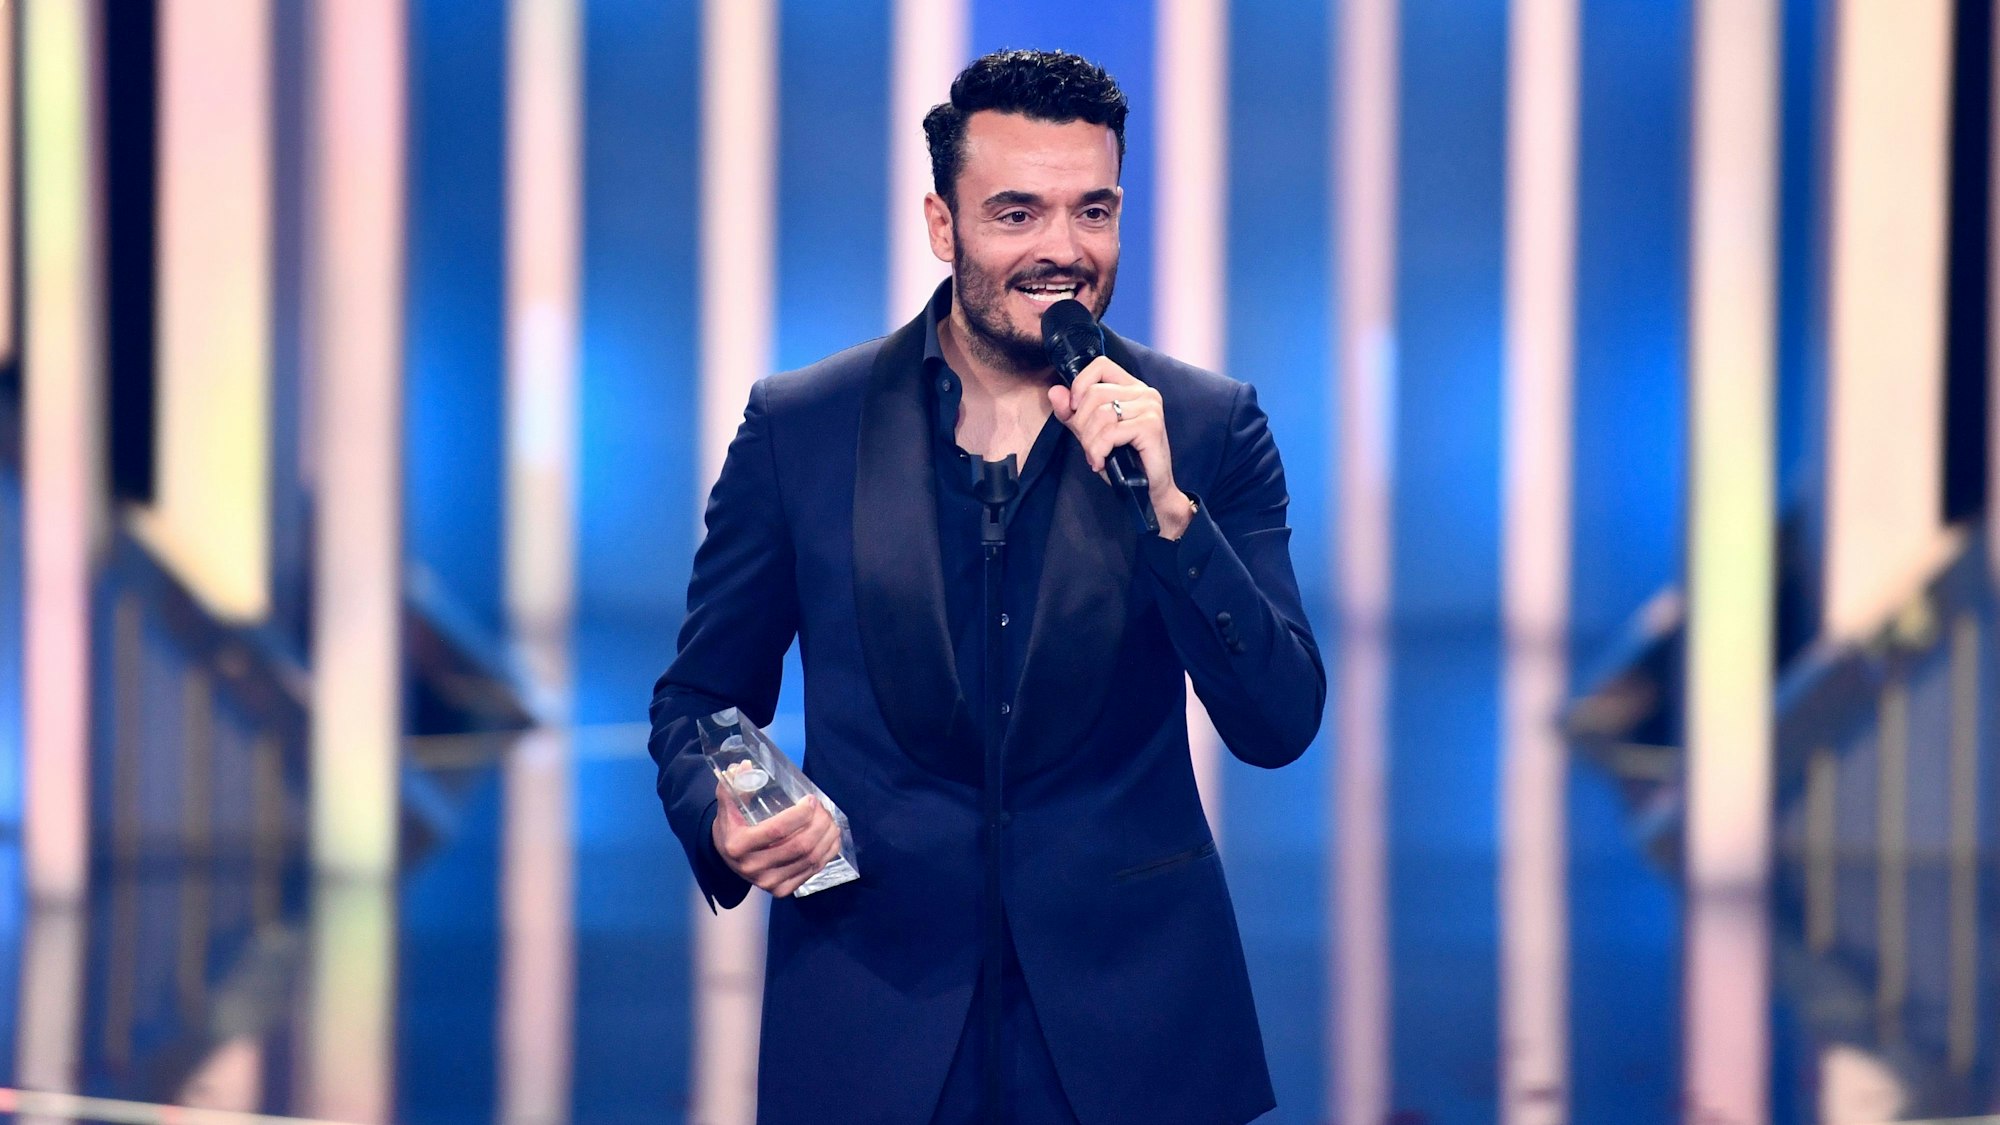 Sänger und Moderator Giovanni Zarrella freut sich bei der Verleihung vom Deutschen Fernsehpreis 2022 über die Auszeichnung in der Kategorie "Beste Einzelleistung/Moderation Unterhaltung" für die „Giovanni Zarrella Show“.